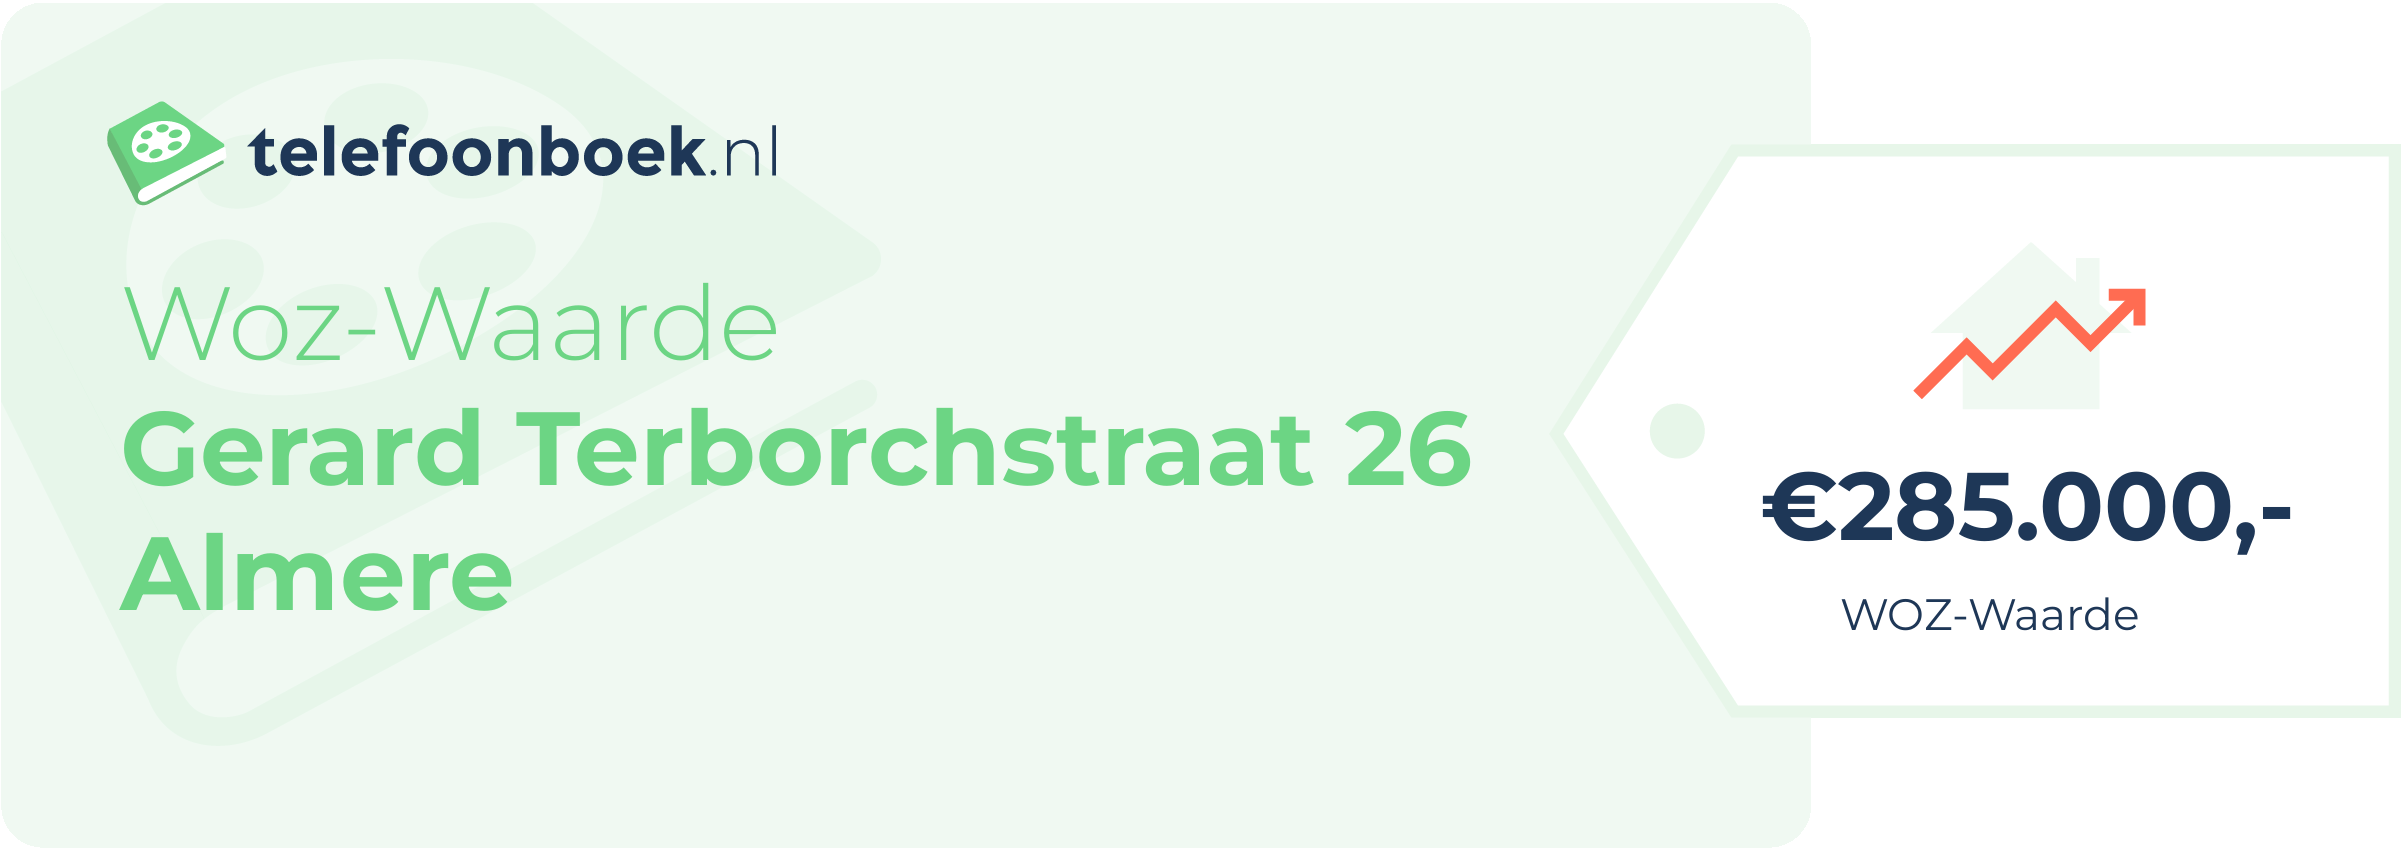 WOZ-waarde Gerard Terborchstraat 26 Almere